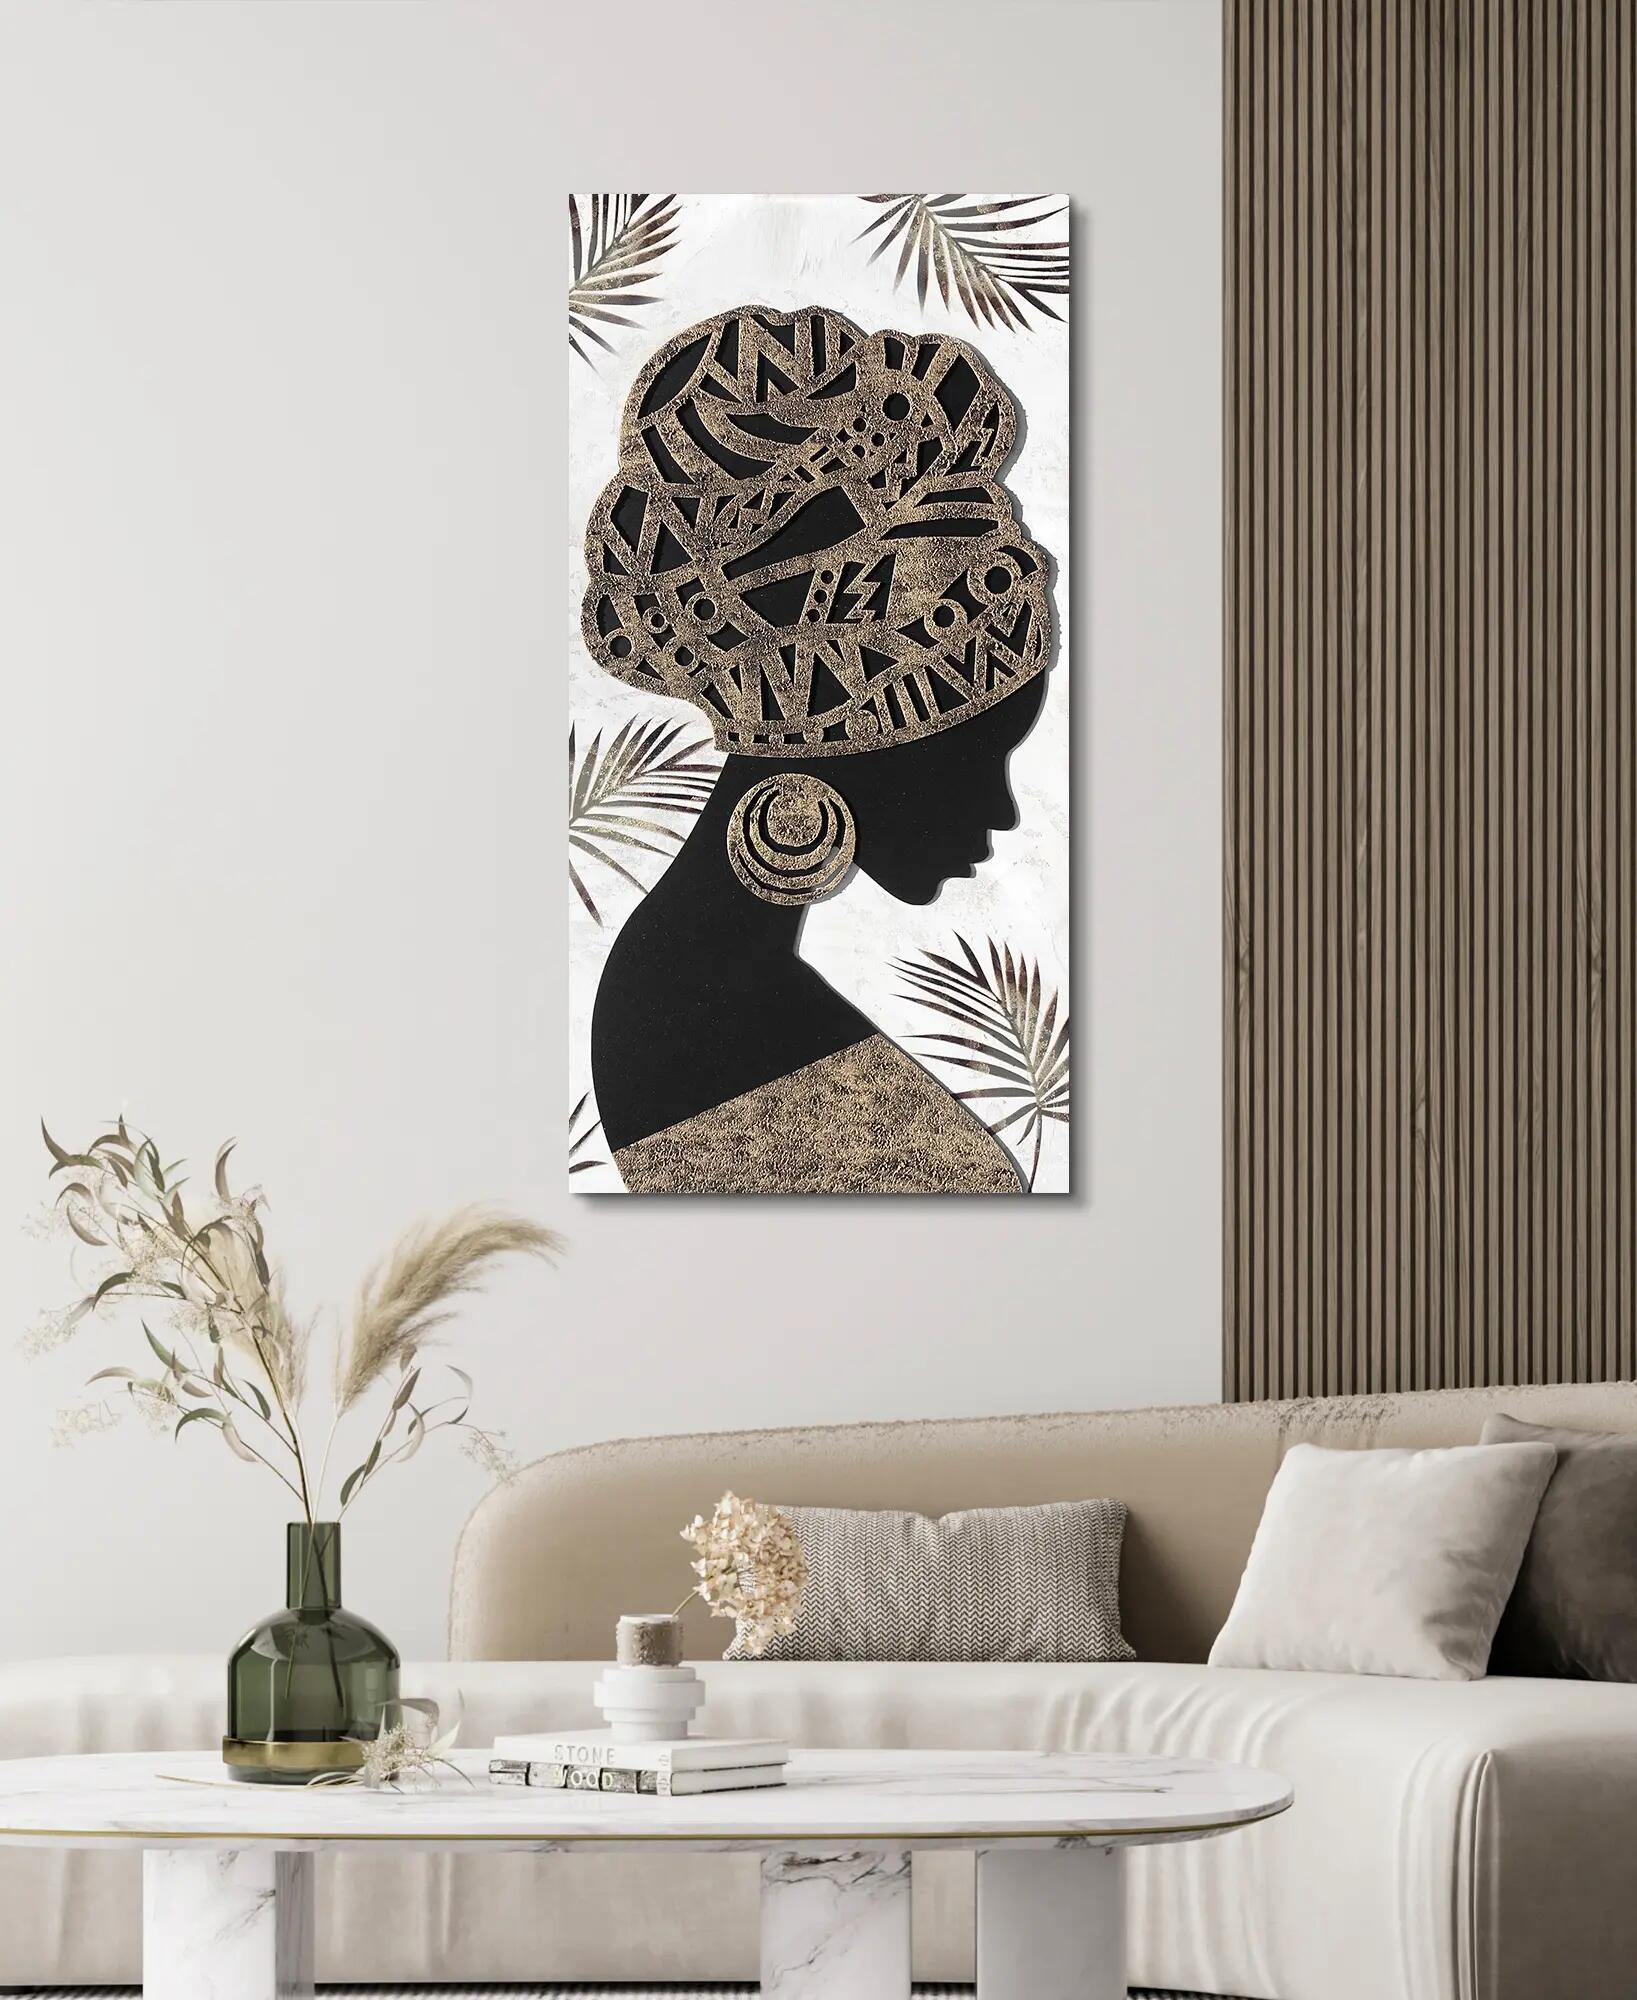 La clave para crear una pared decorativa es este espejo: aciertos de Ikea a  Leroy Merlin